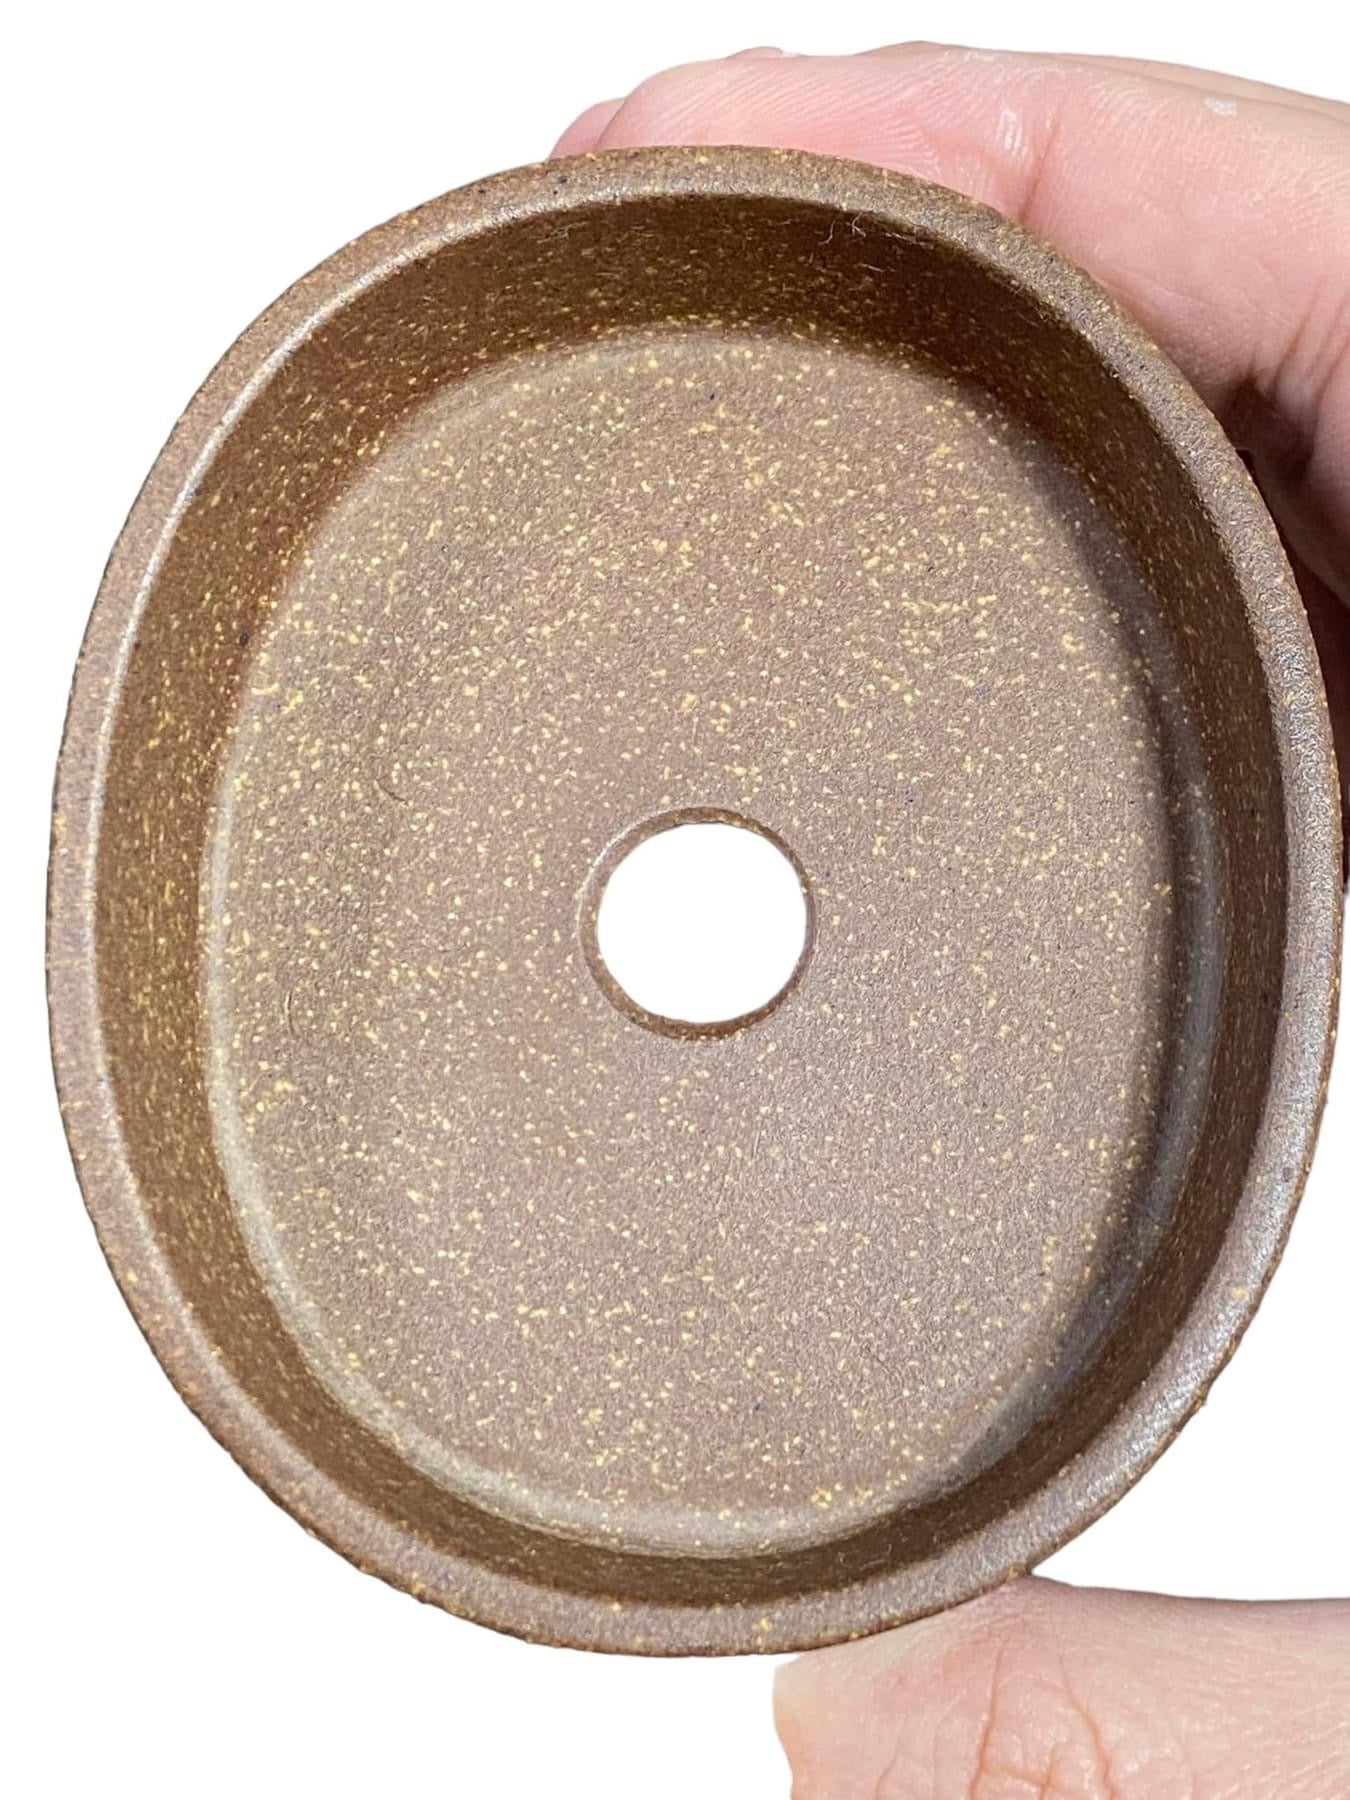 Mituyama - Unglazed Oval Bonsai Pot (3-1/2” wide)